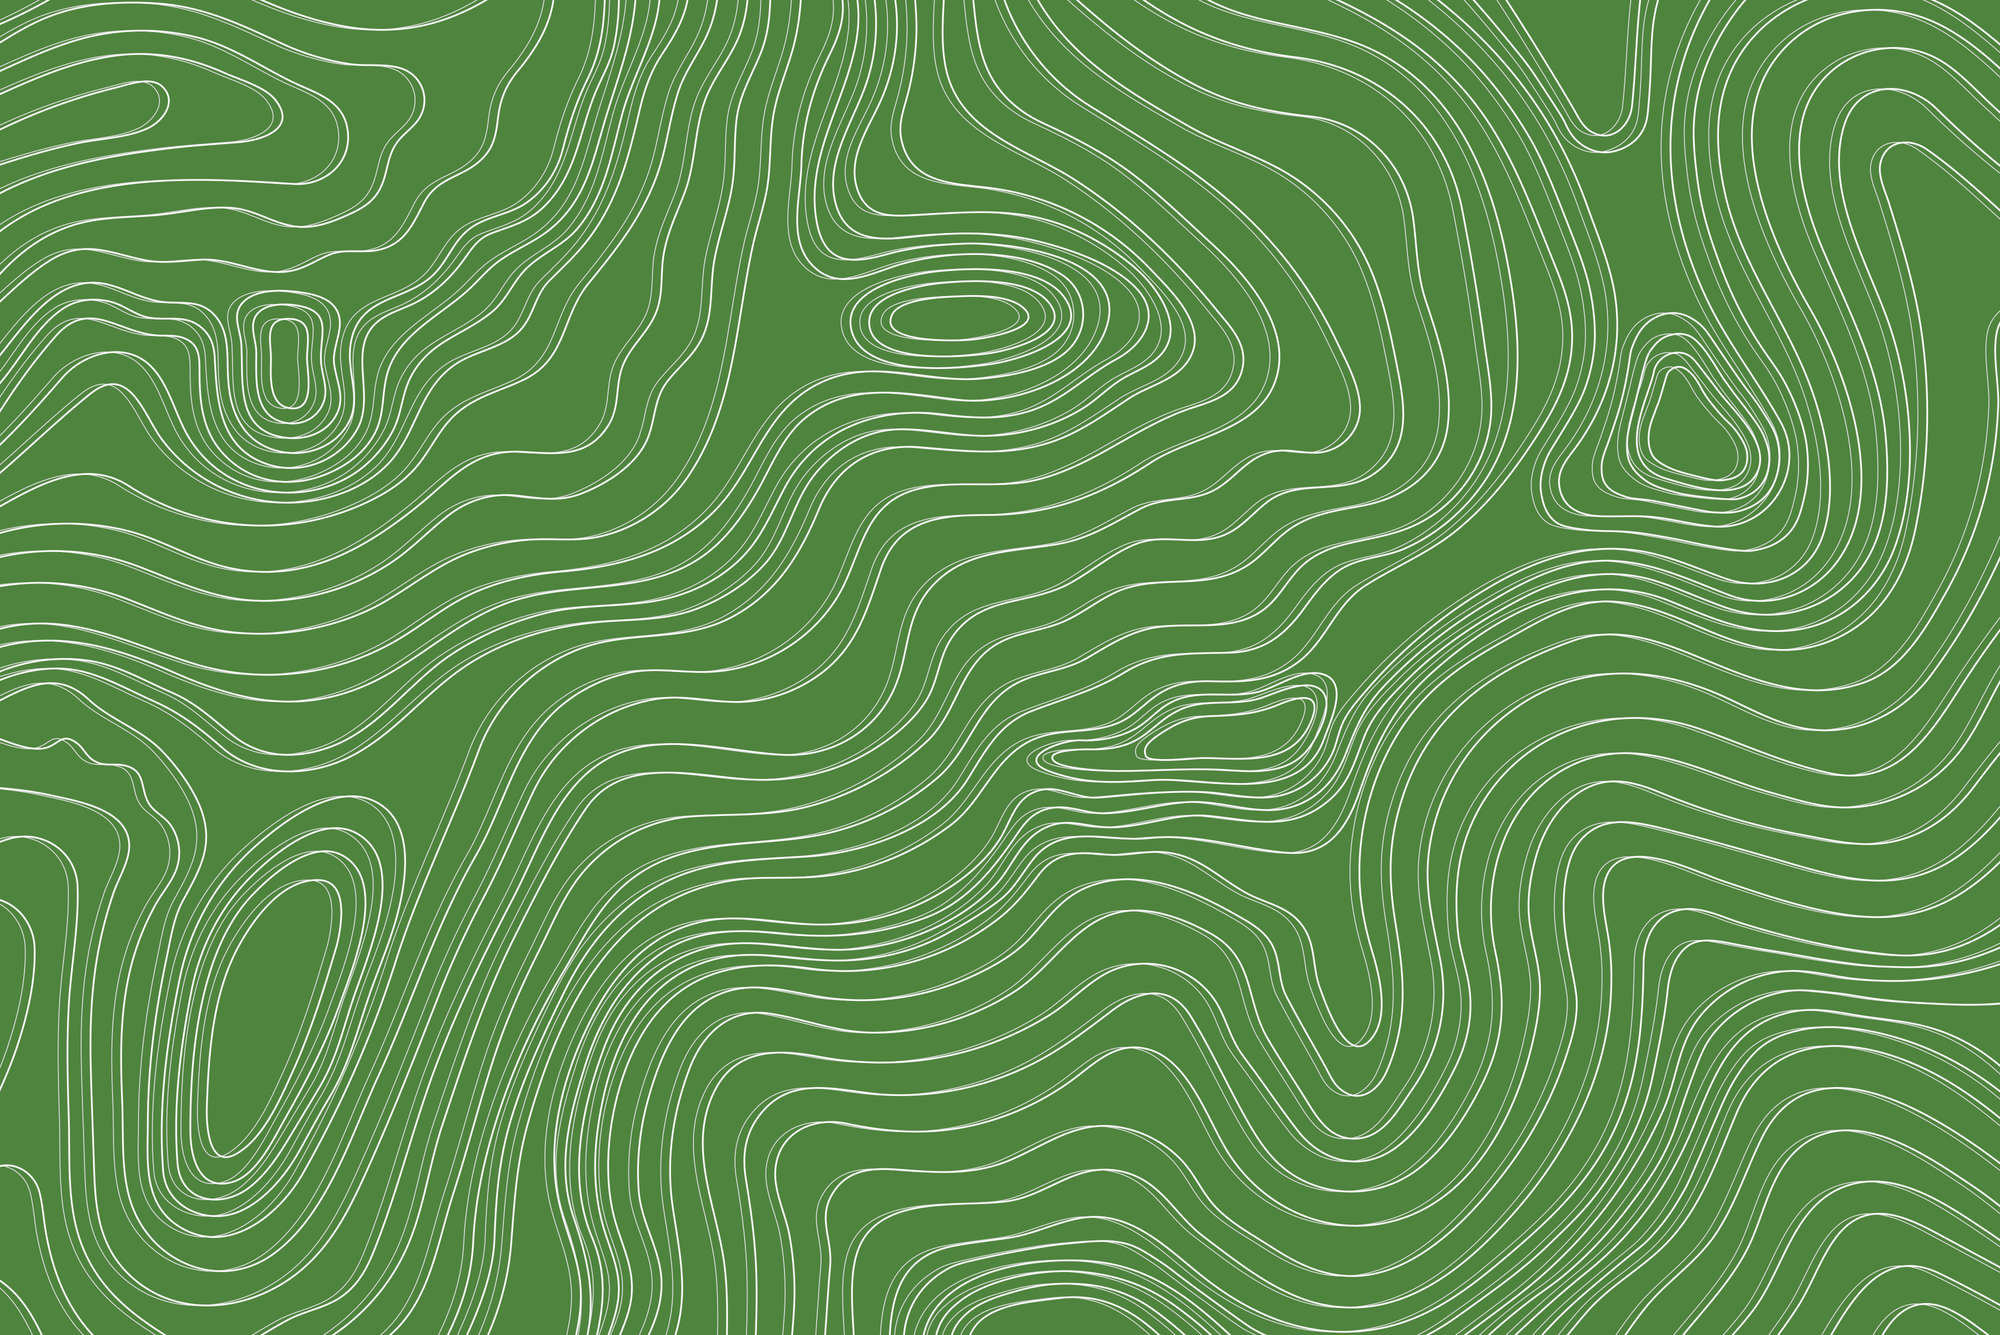             Papier peint design vagues et cercles motif vert sur intissé nacré lisse
        